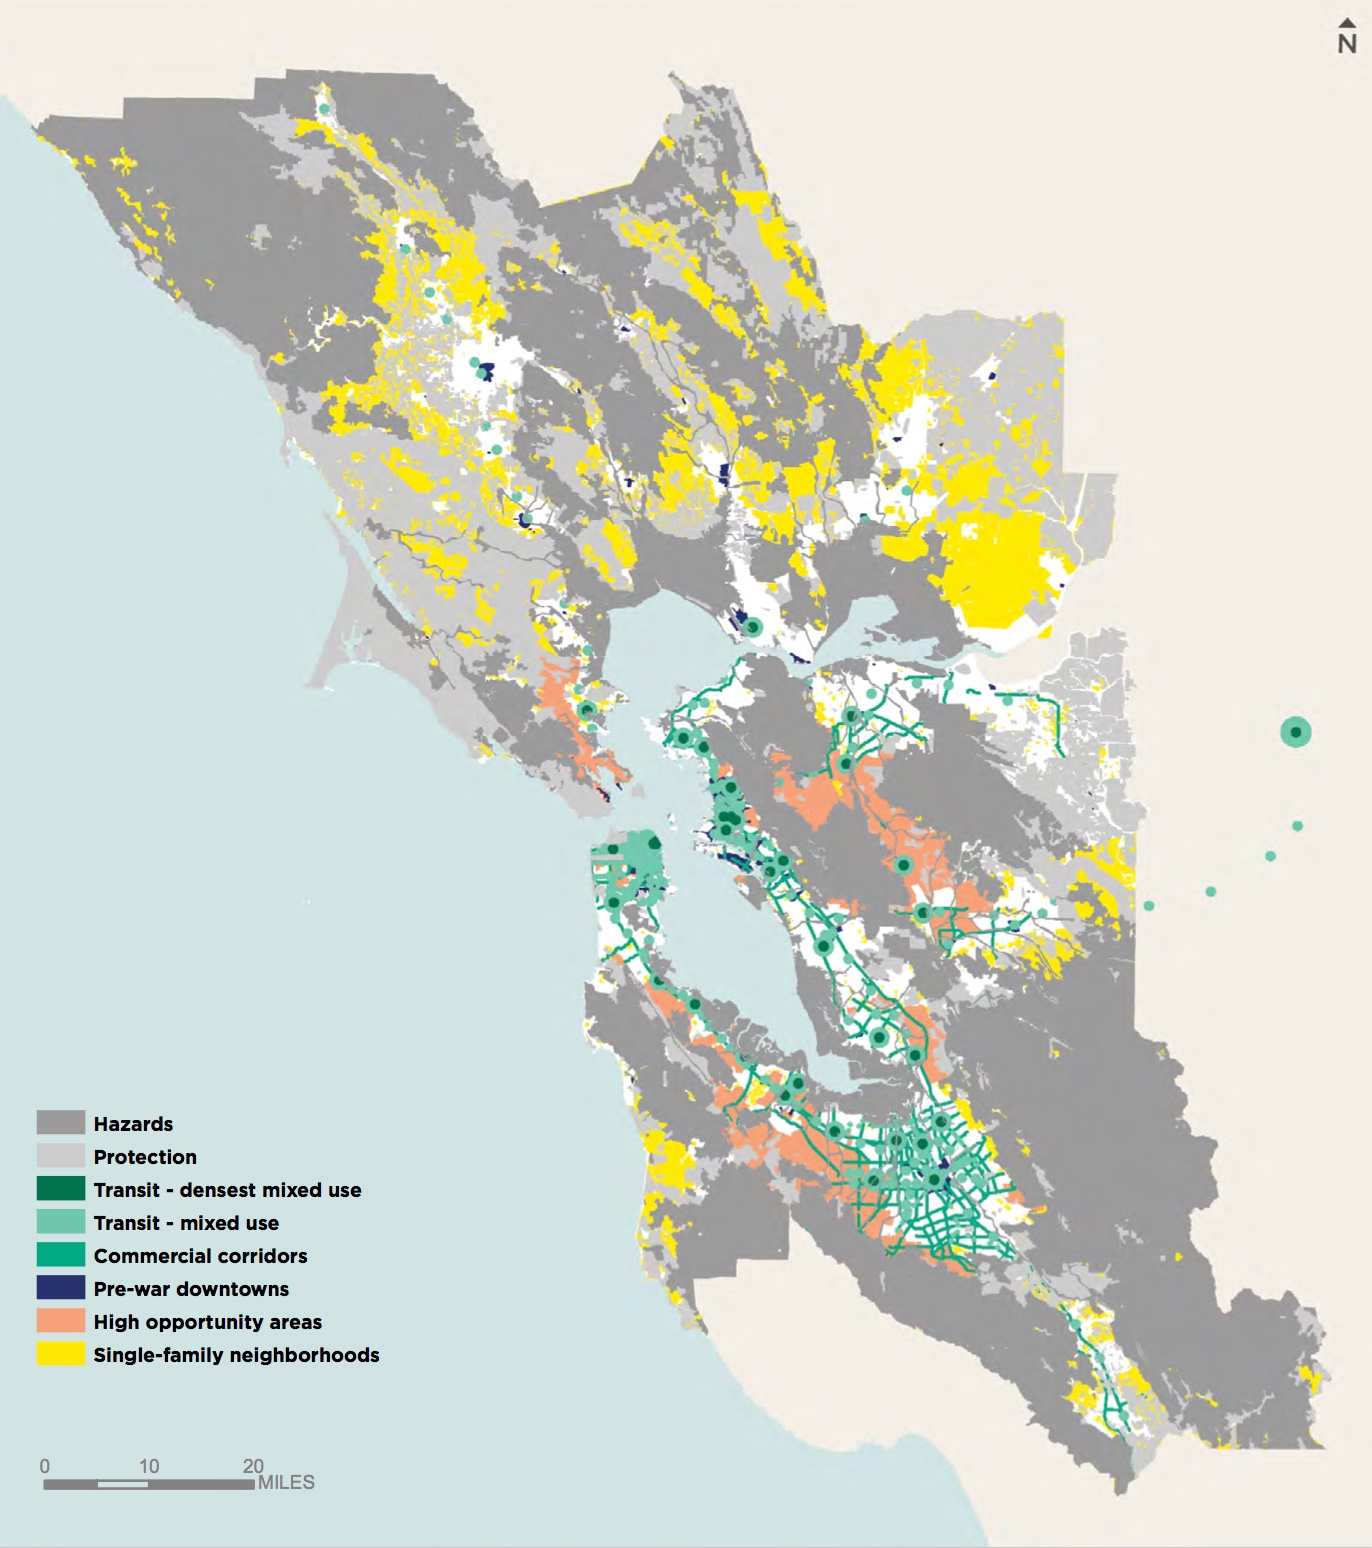 旧金山湾区不同发展地段分区规划图。